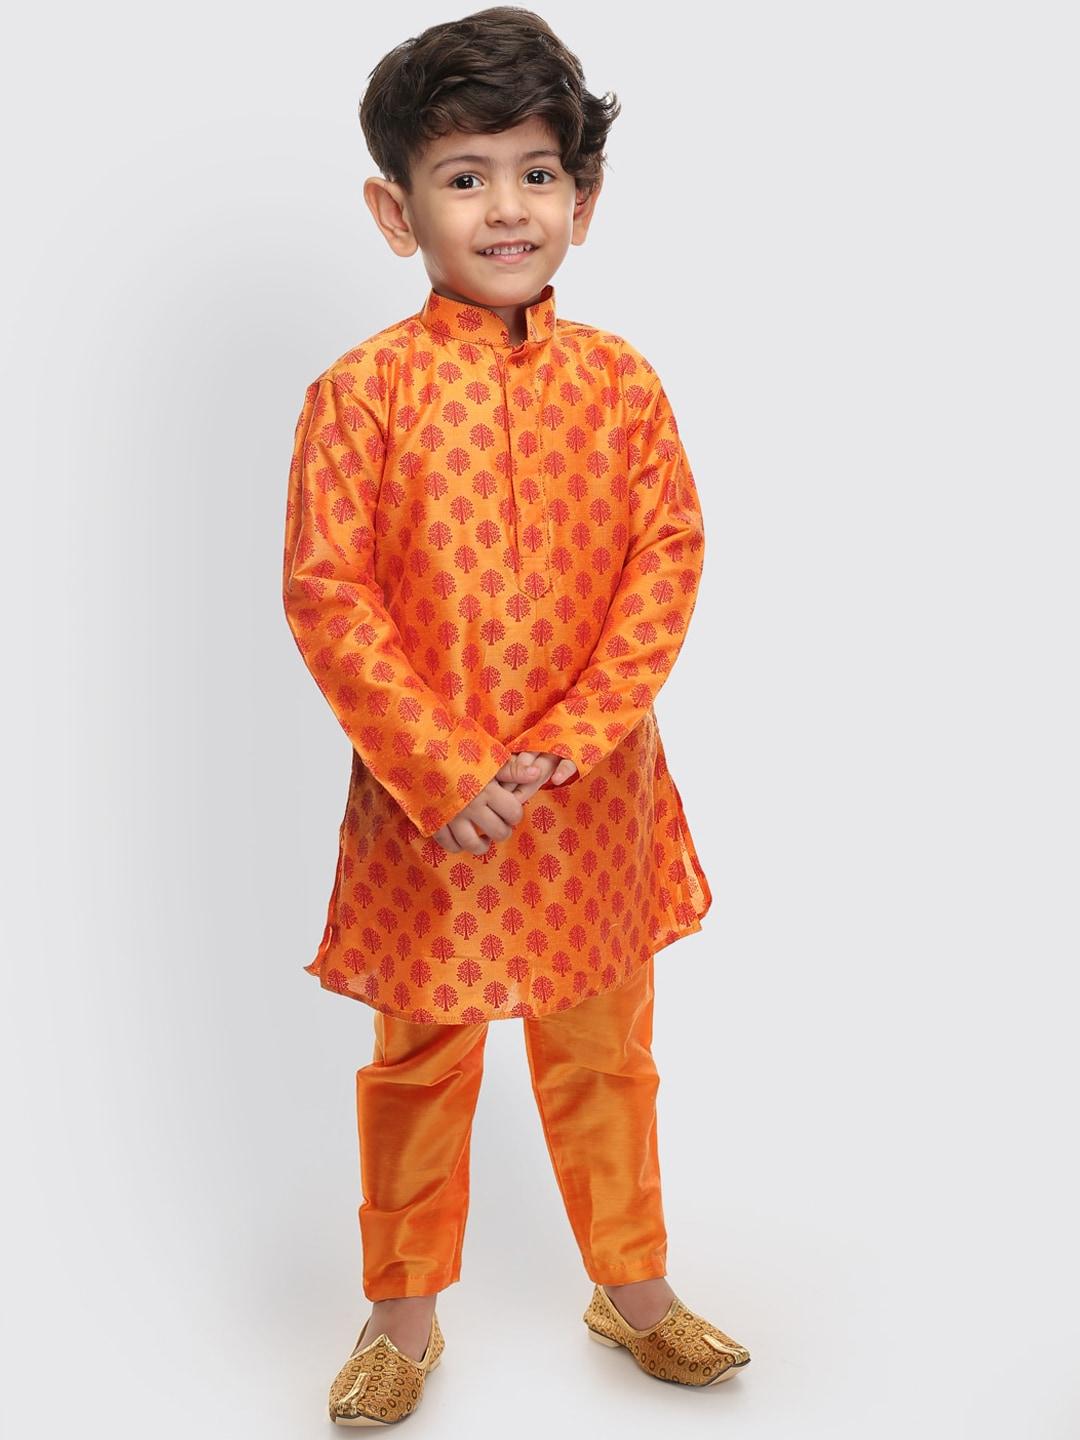 VASTRAMAY SISHU Boys Orange Ethnic Motifs Printed Regular Kurta with Pyjamas